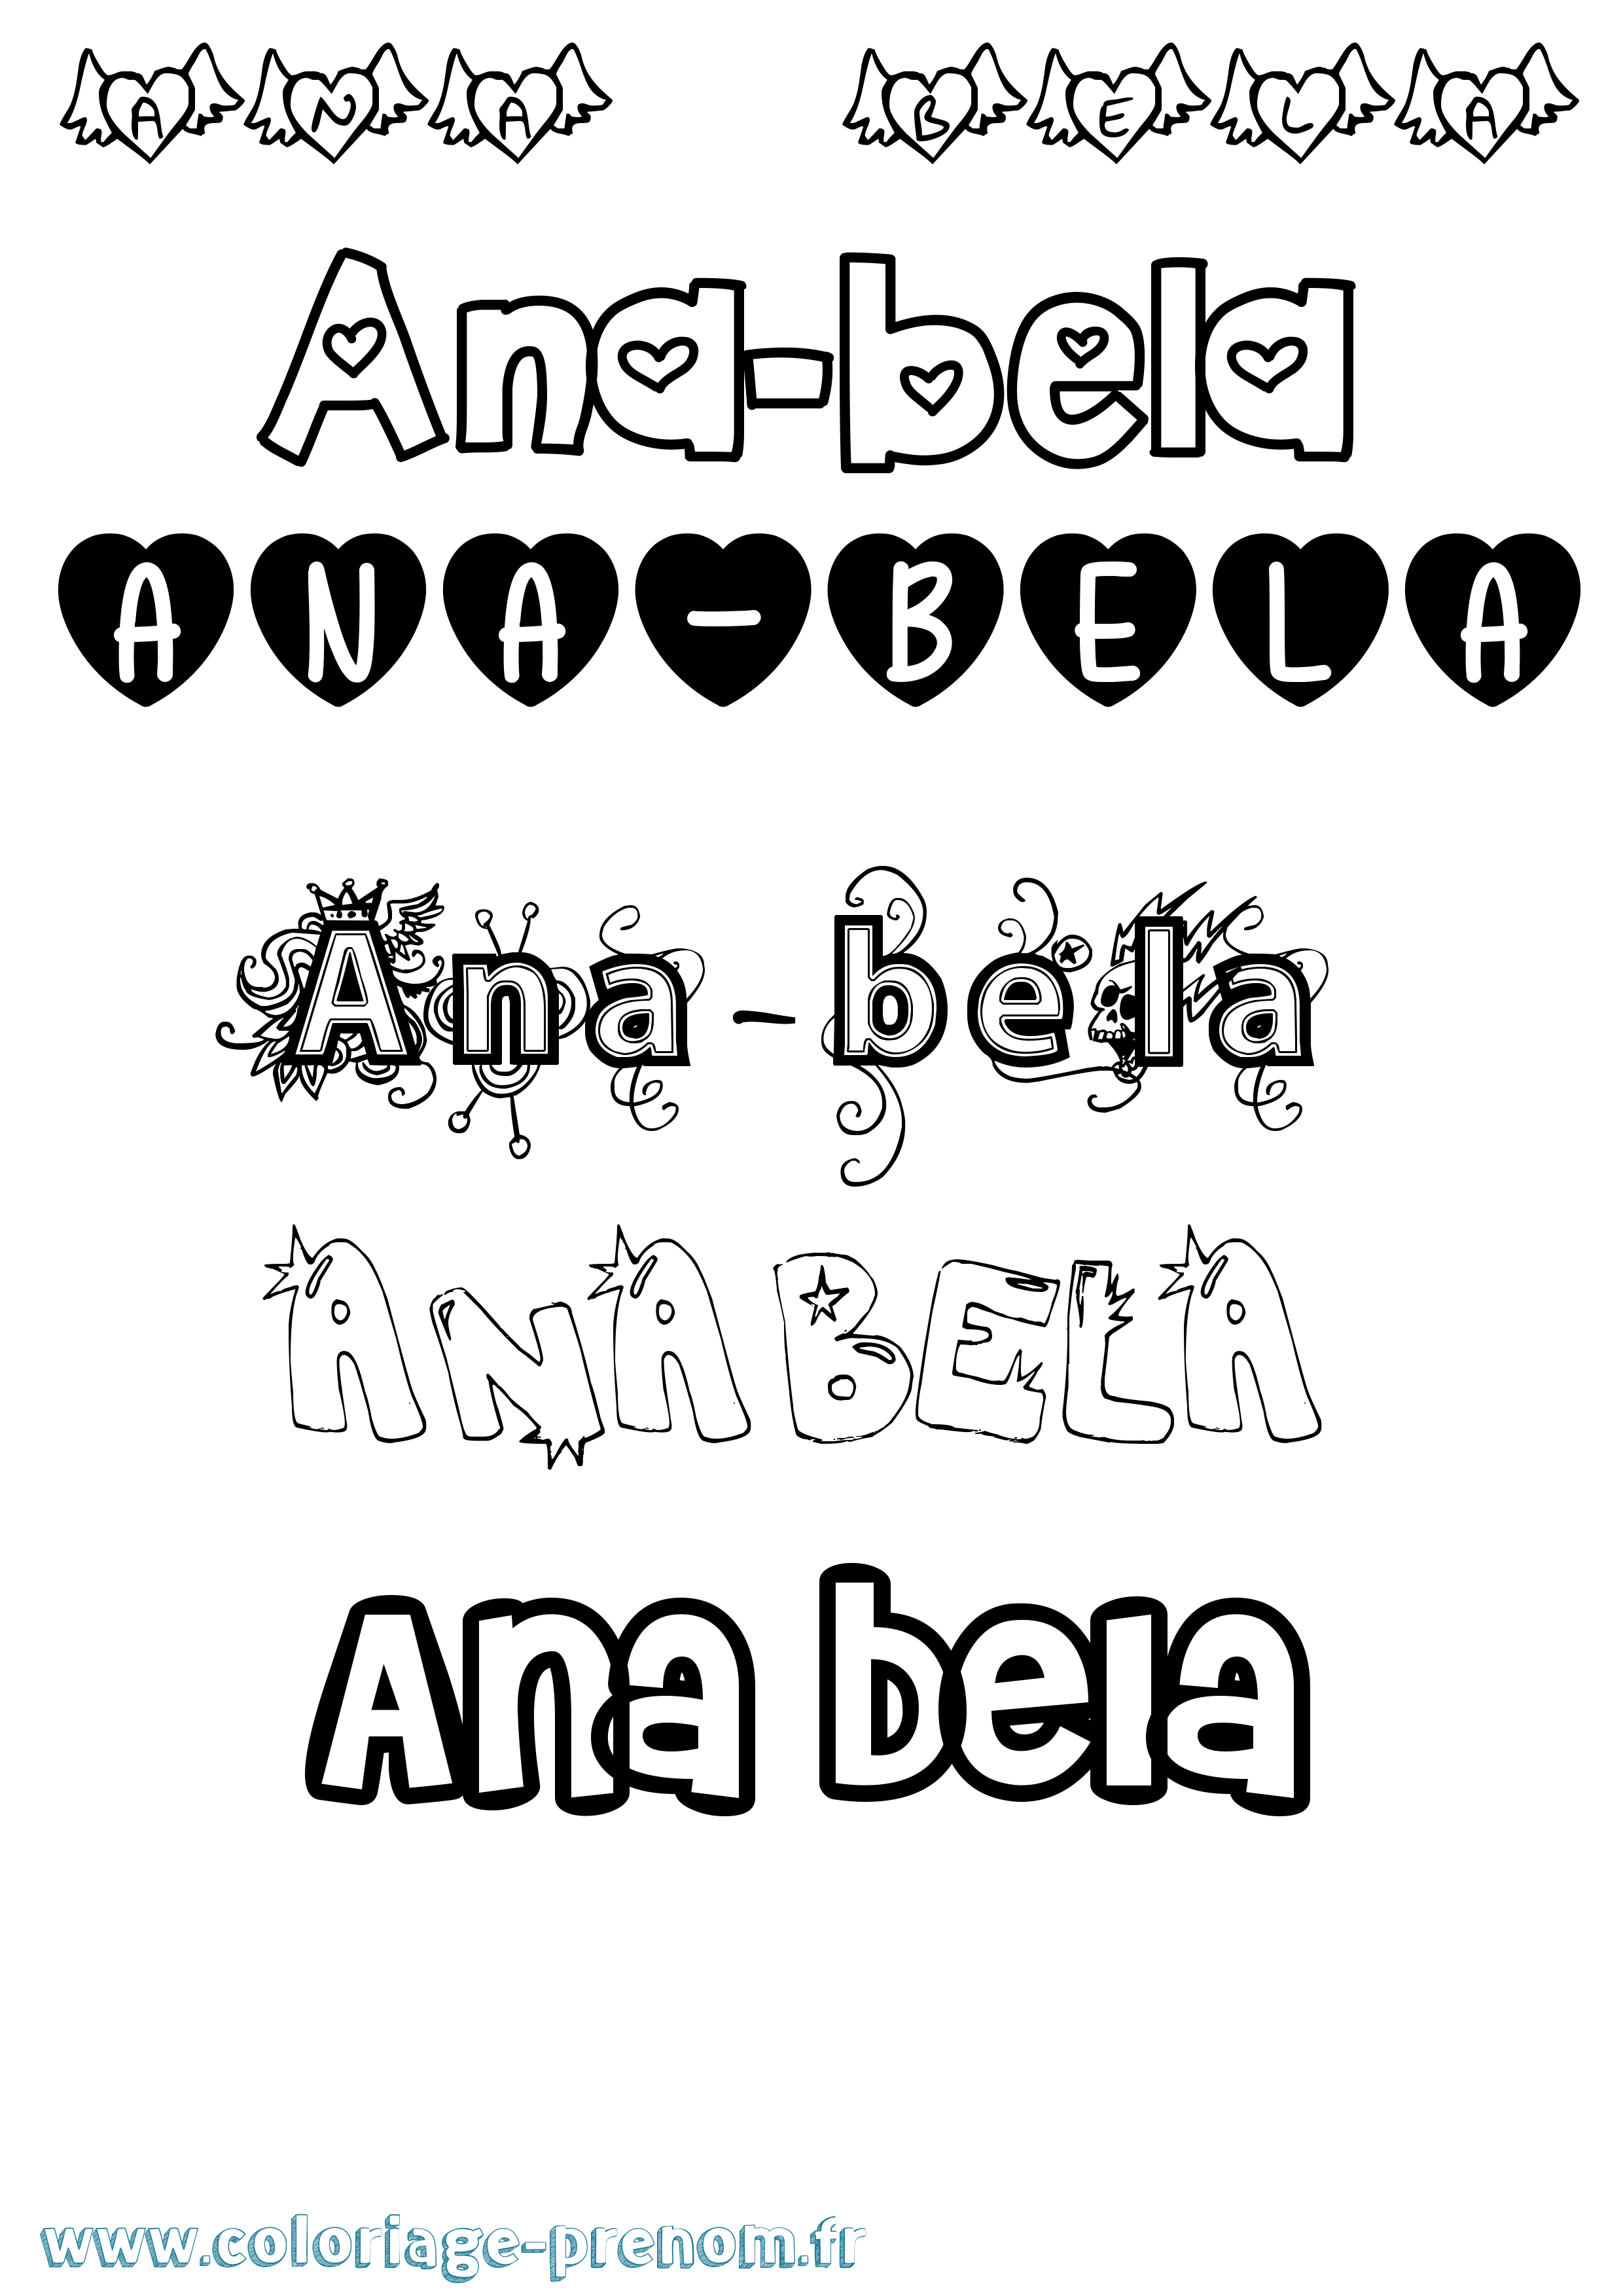 Coloriage prénom Ana-Bela Girly